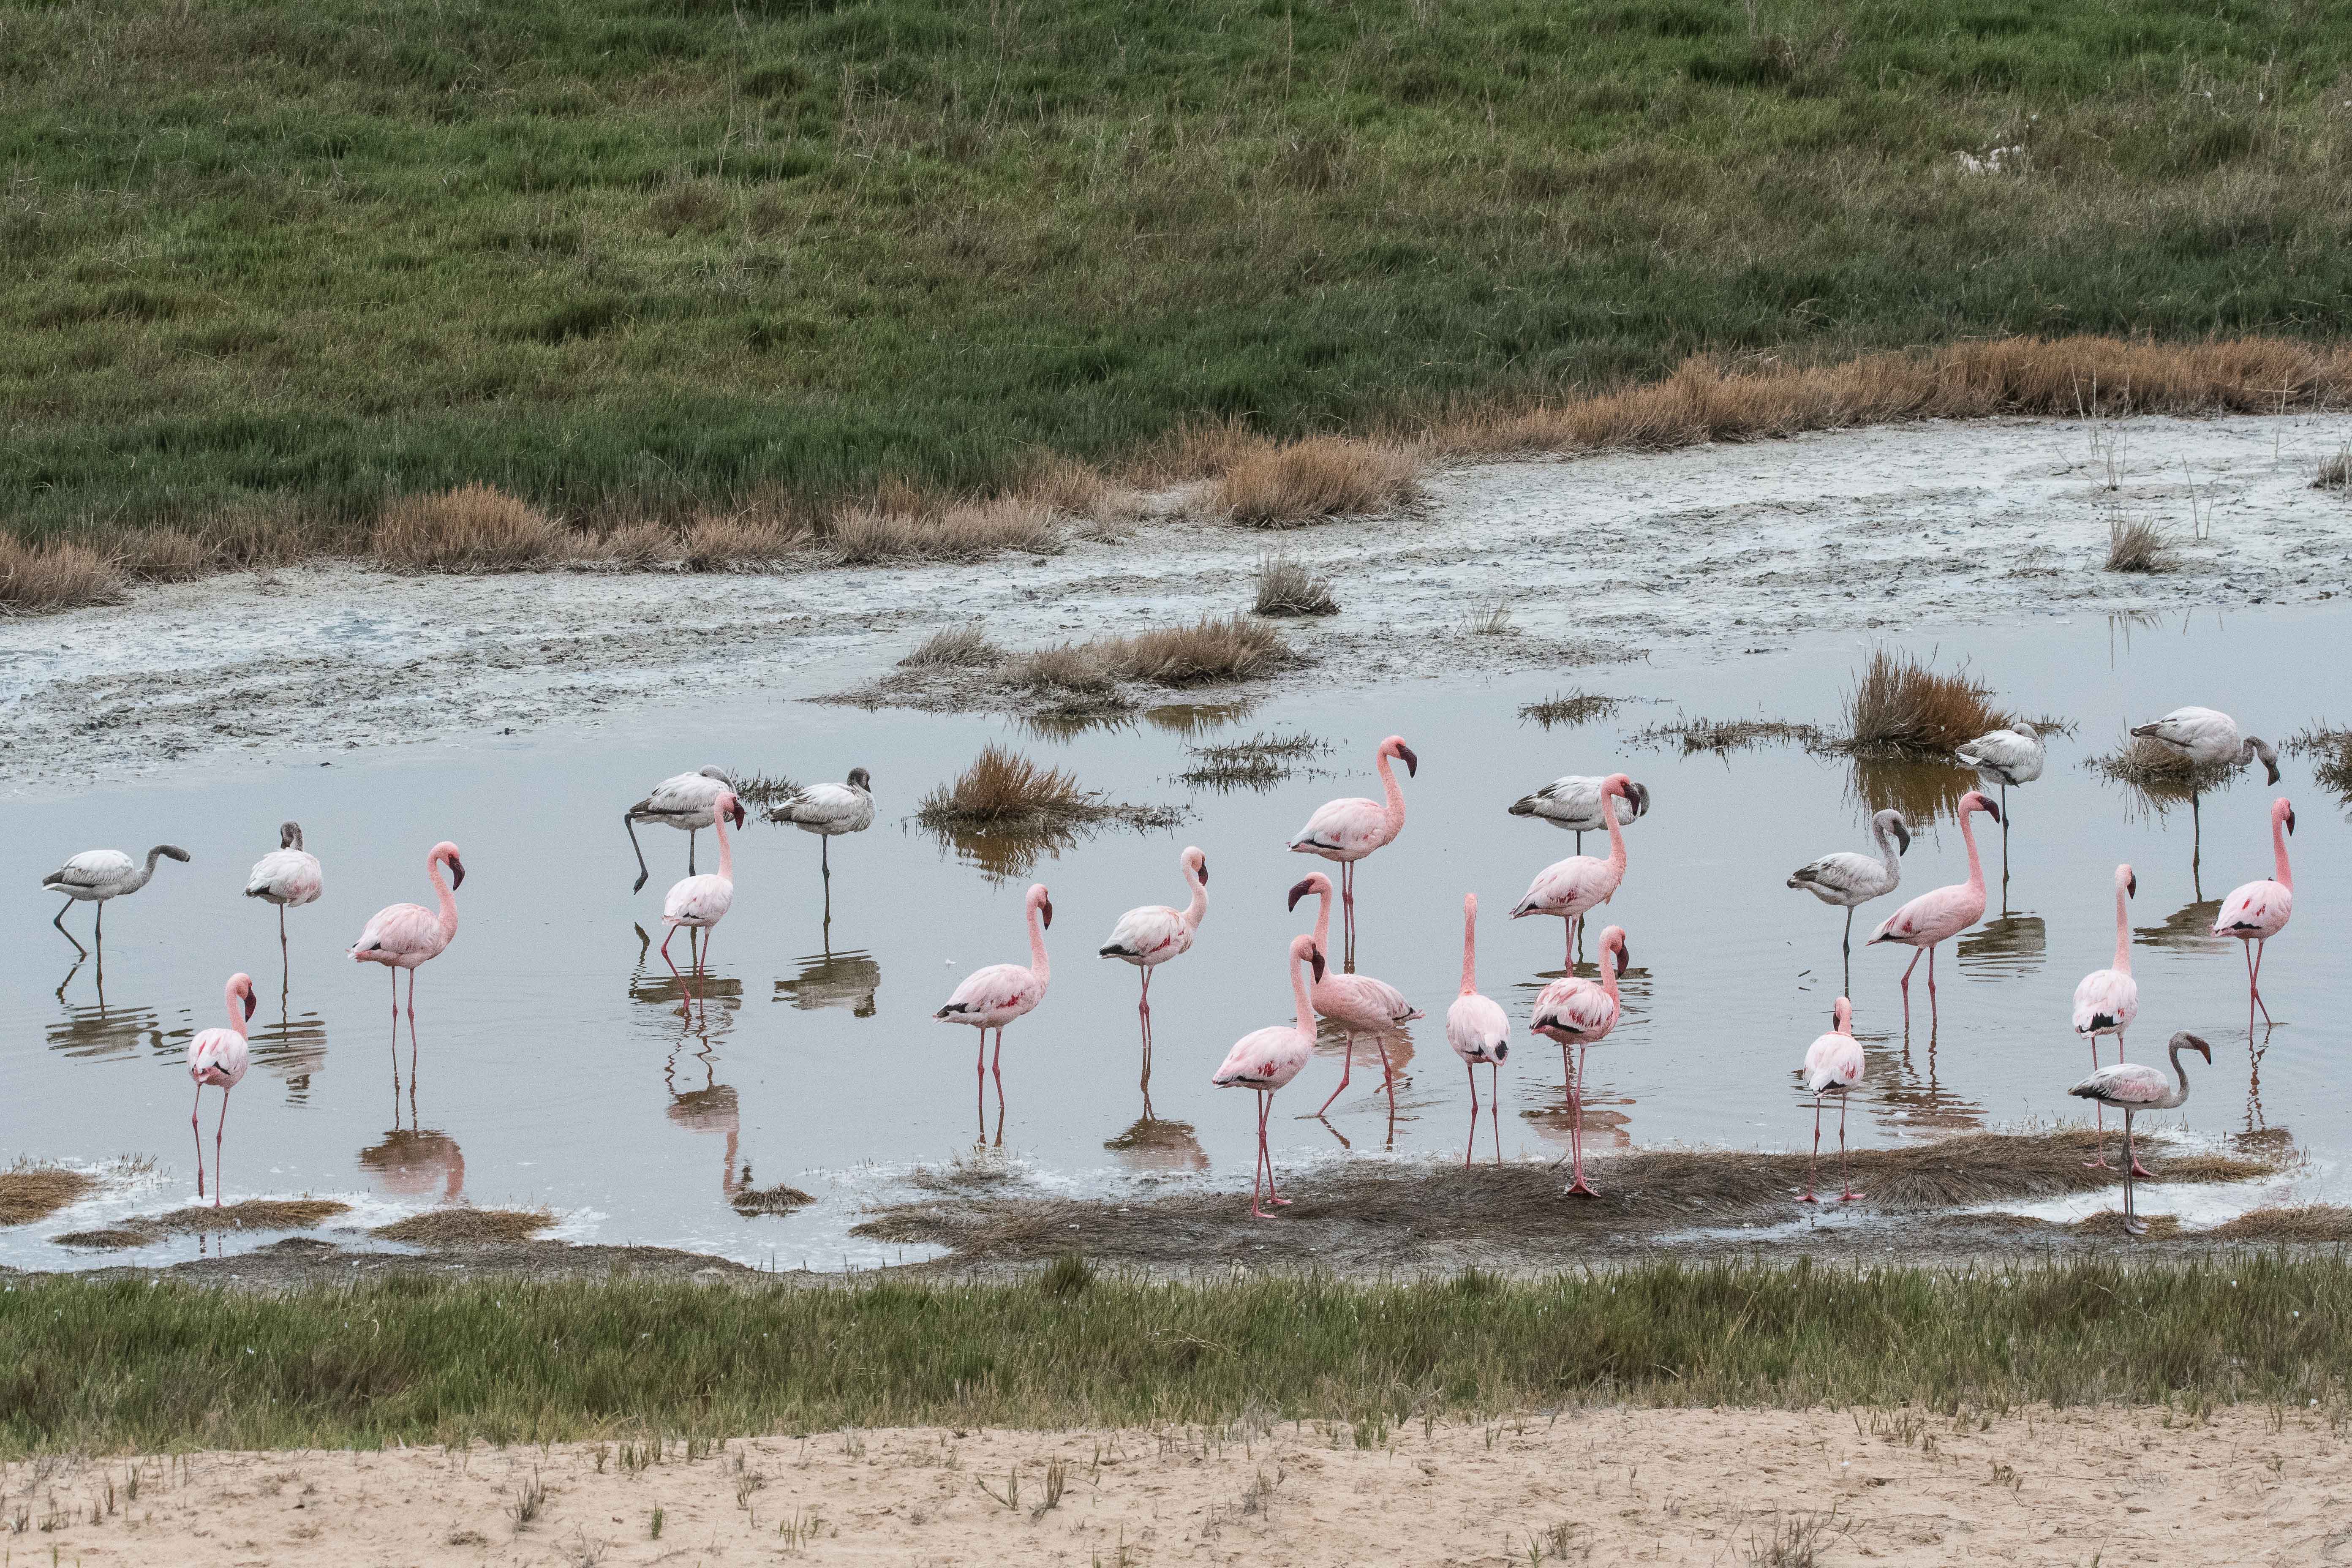 Flamants nains (Lesser flamingos, Phoeniconaias minor), adultes et juvéniles, Delta de la rivière Kuiseb, Dorob National park, Namibie.